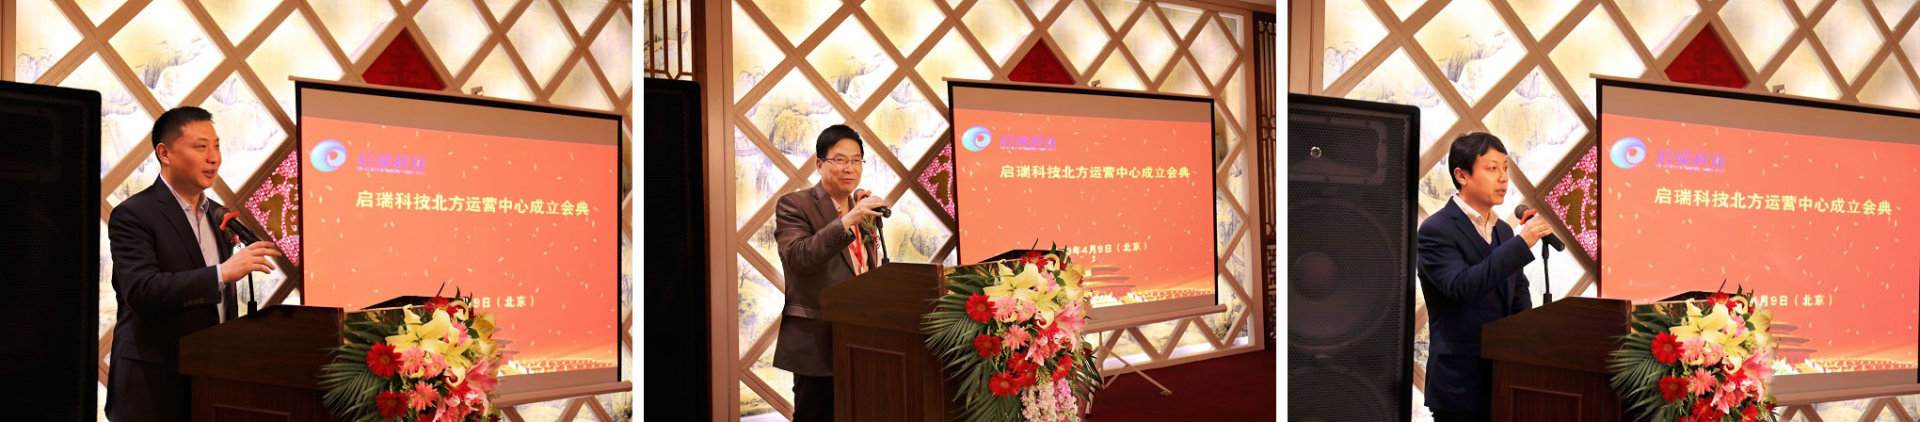 启瑞科技北方运营中心成立会典礼在京举行